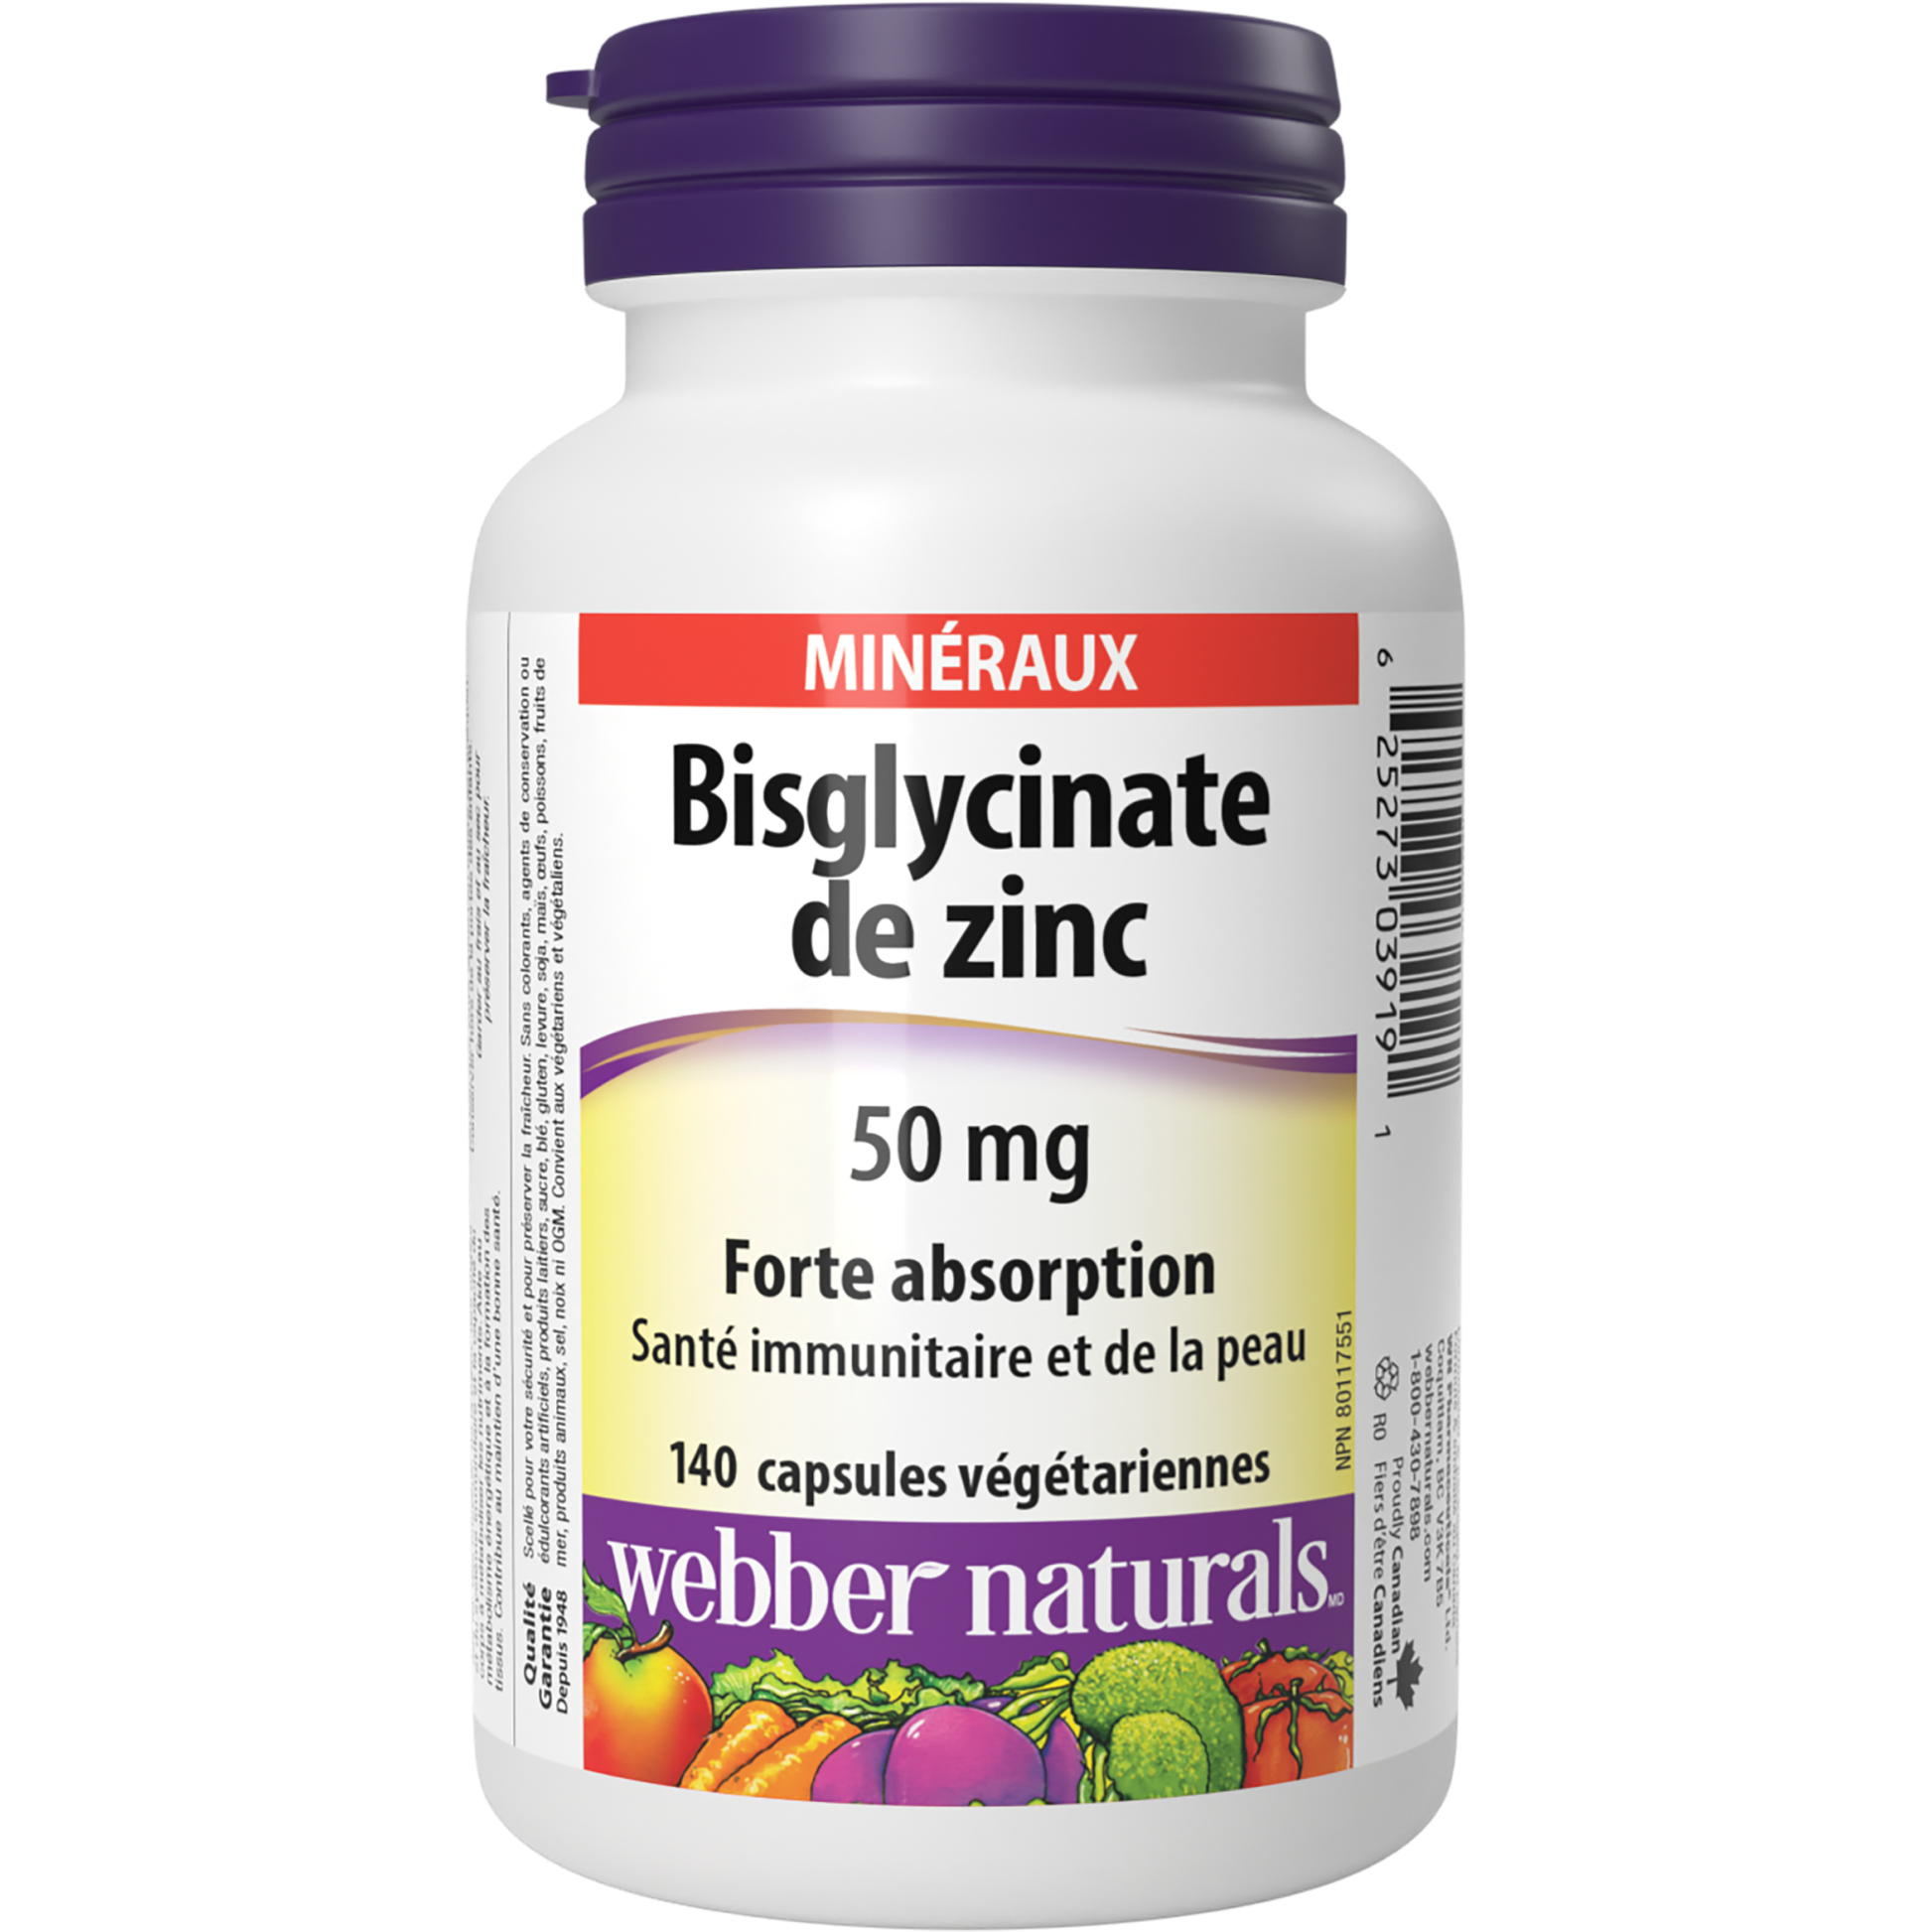 Bisglycinate de zinc 50 mg for Webber Naturals|v|hi-res|WN3919